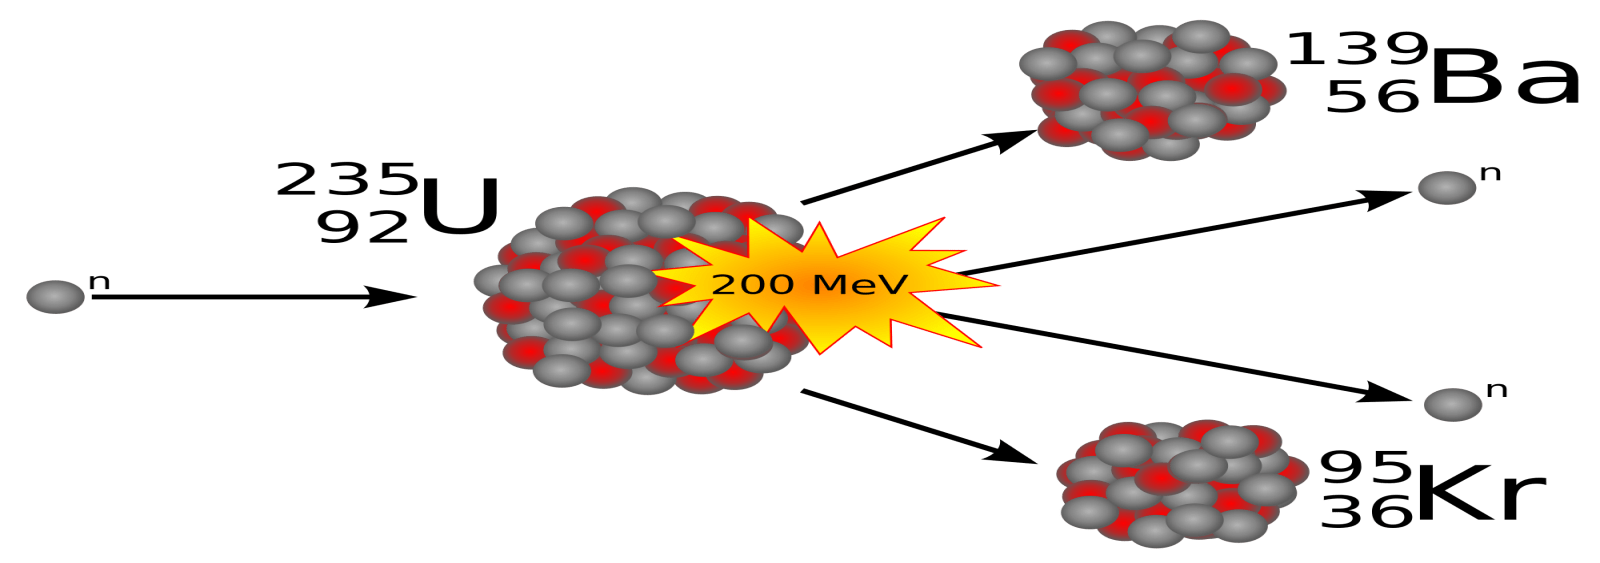 تفاعل الانشطار النووي لليورانيوم (U-235)